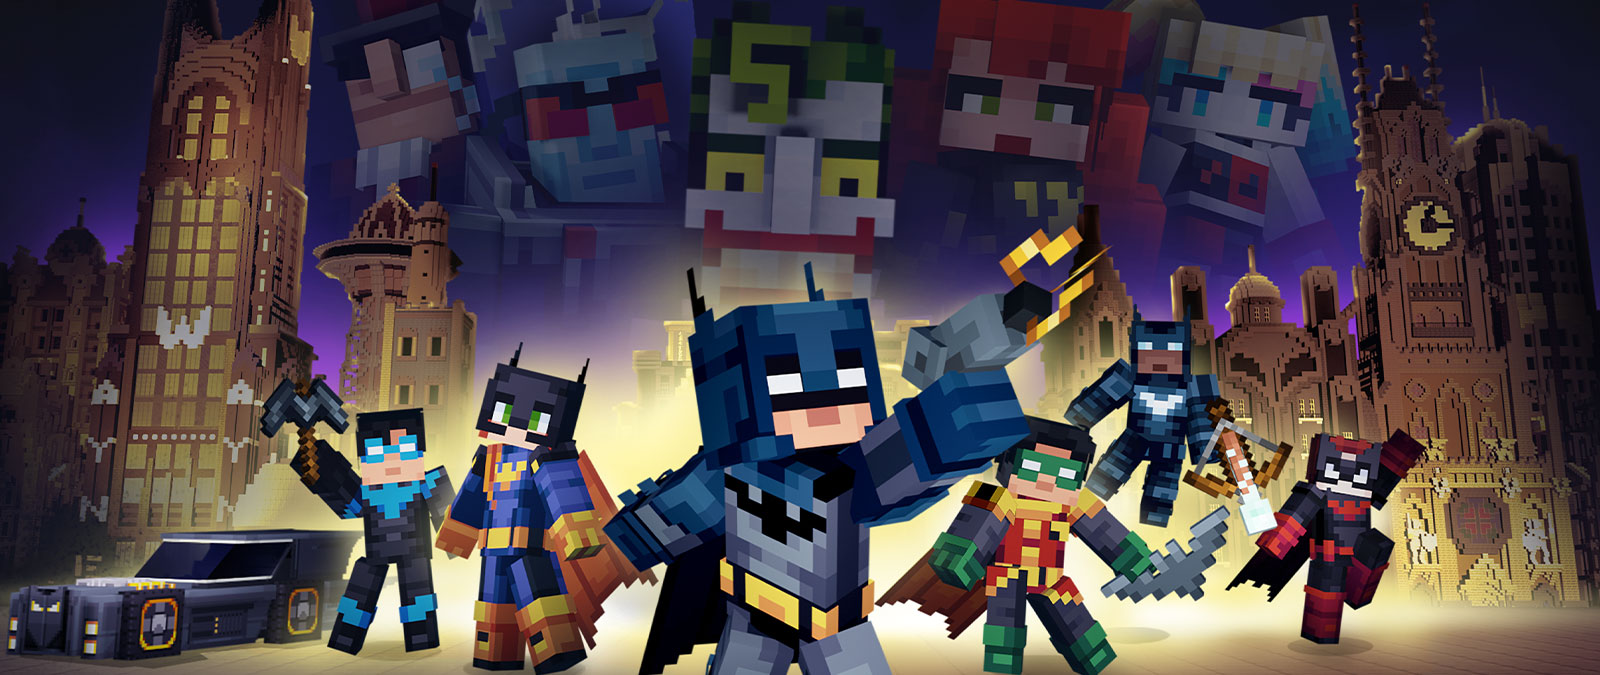 Batman y la familia de Batman posaron juntos con villanos con vistas a una Ciudad Gótica en Minecraft.